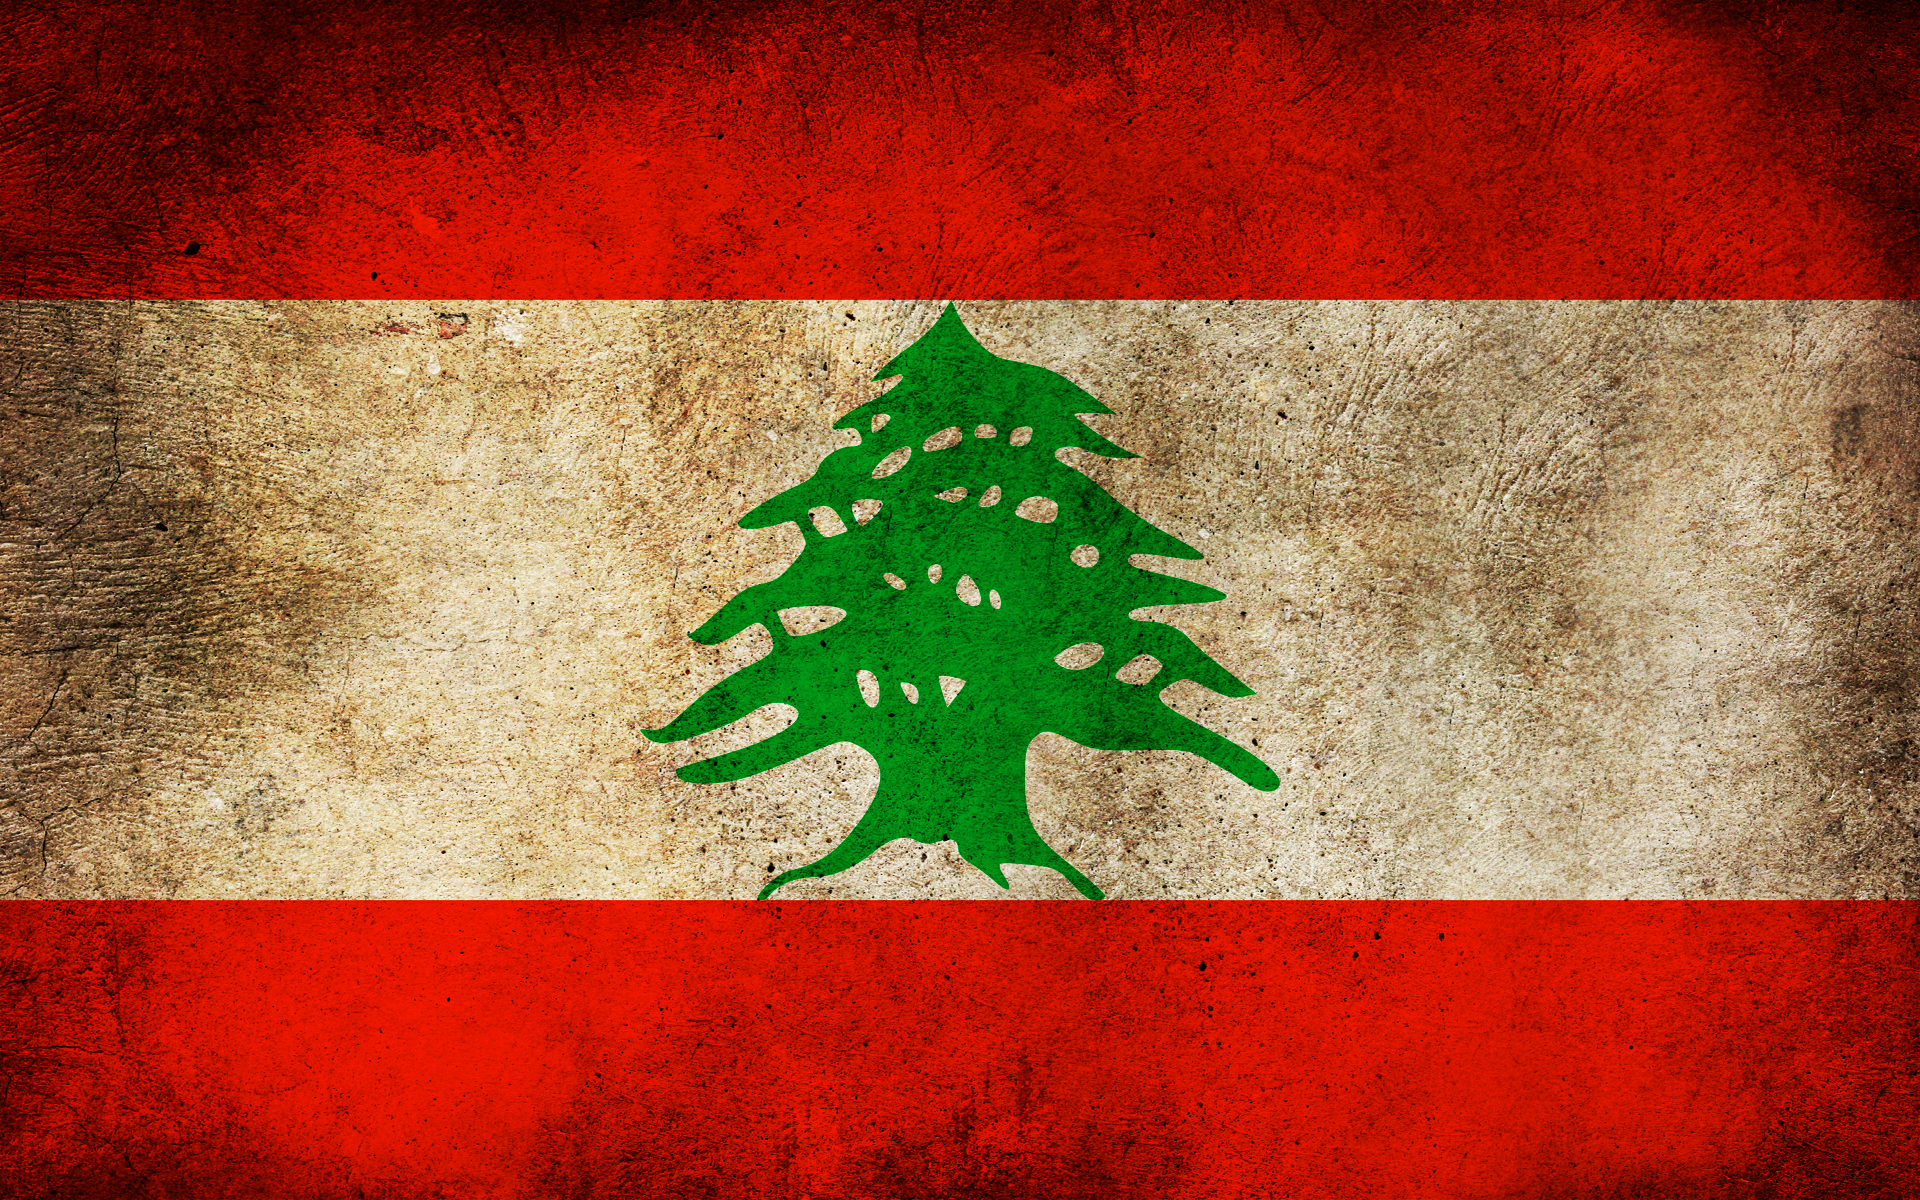 флаги, грязный, Ливан, Хезболла - обои на рабочий стол